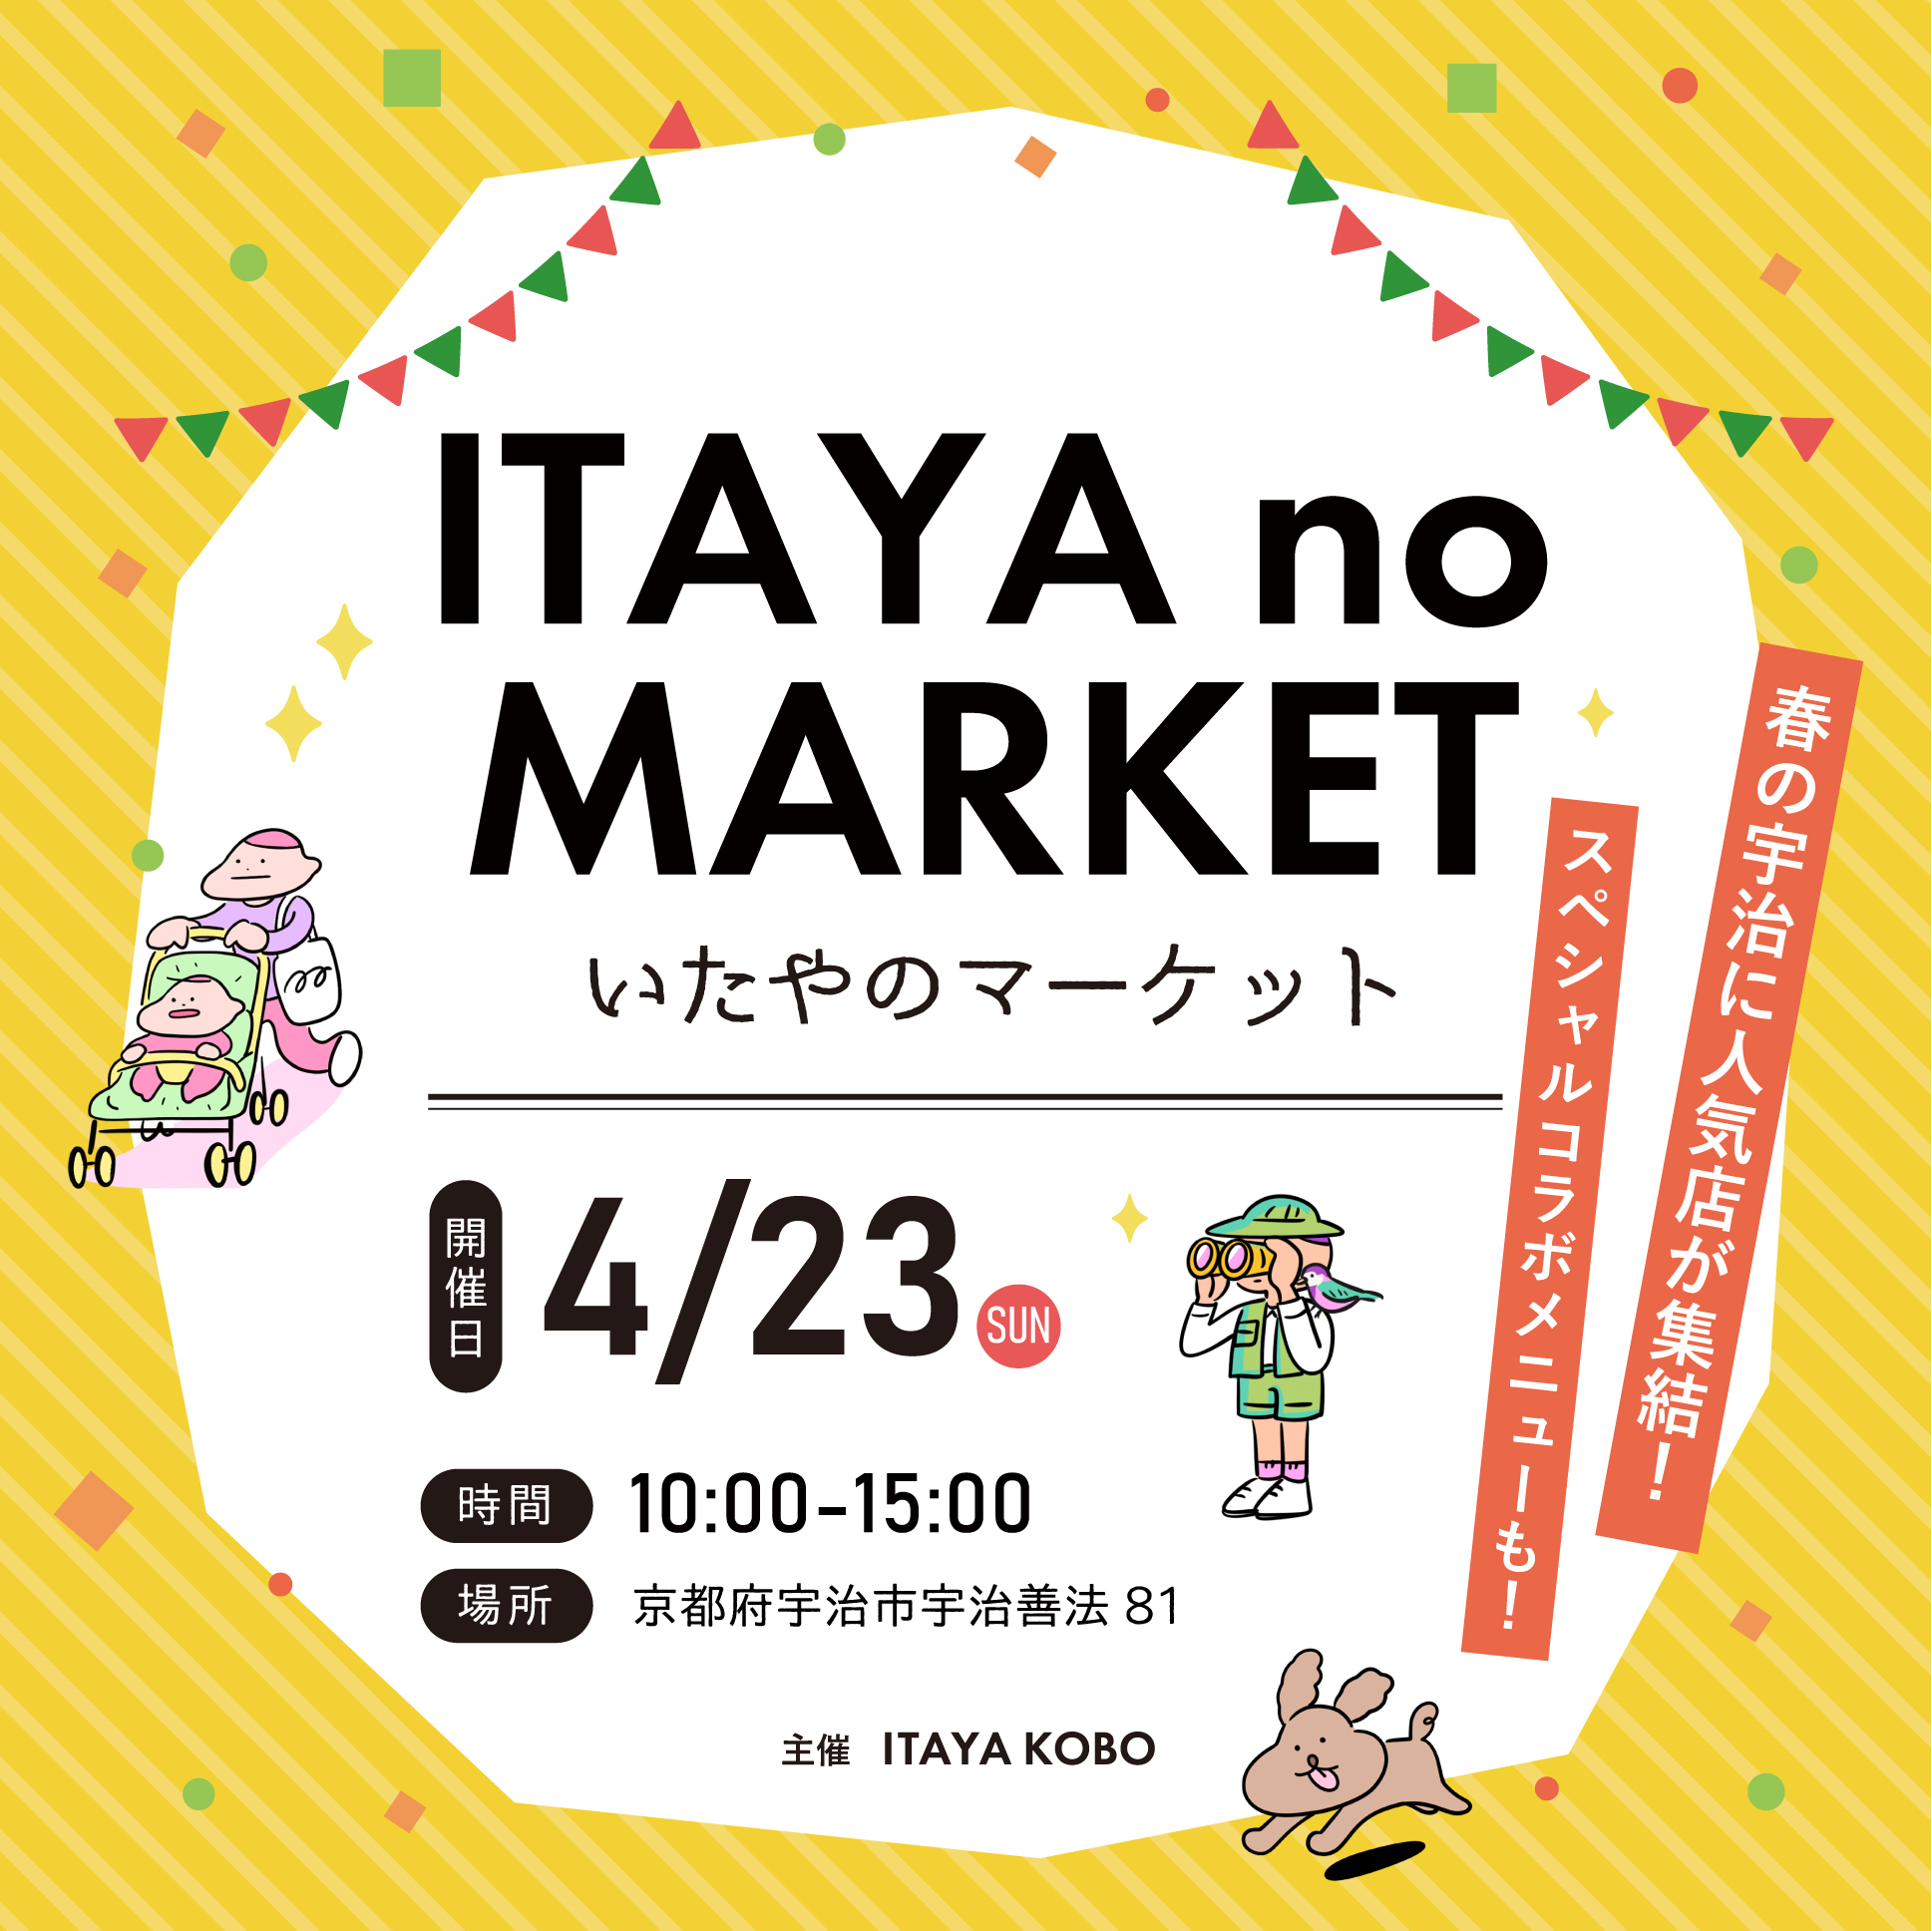 京都・宇治を盛り上げる！地元工務店が開催する
食と体験のマルシェイベント『いたやのマーケット』
4月23日(日)開催